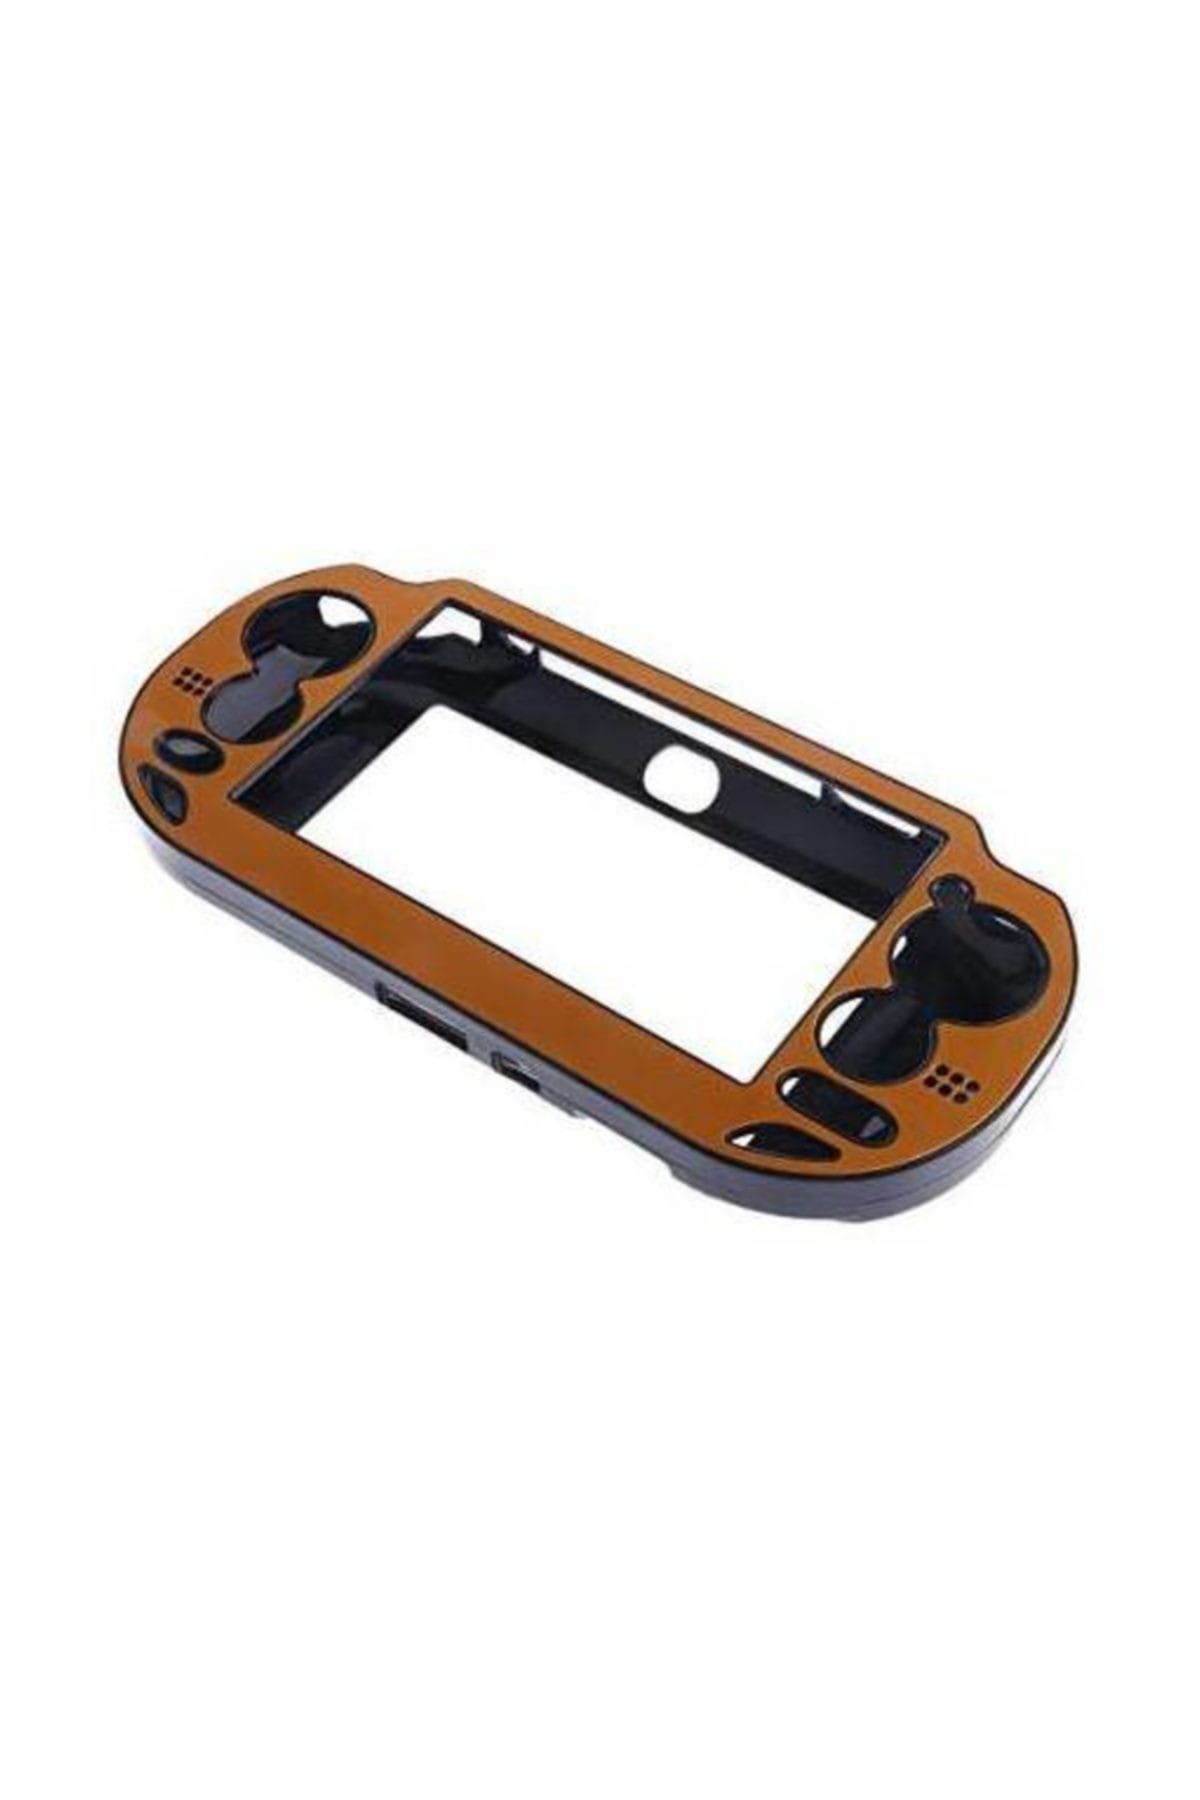 Tasco PS Vita Korumalı Taşıma Kasası - Turuncu Alüminyum